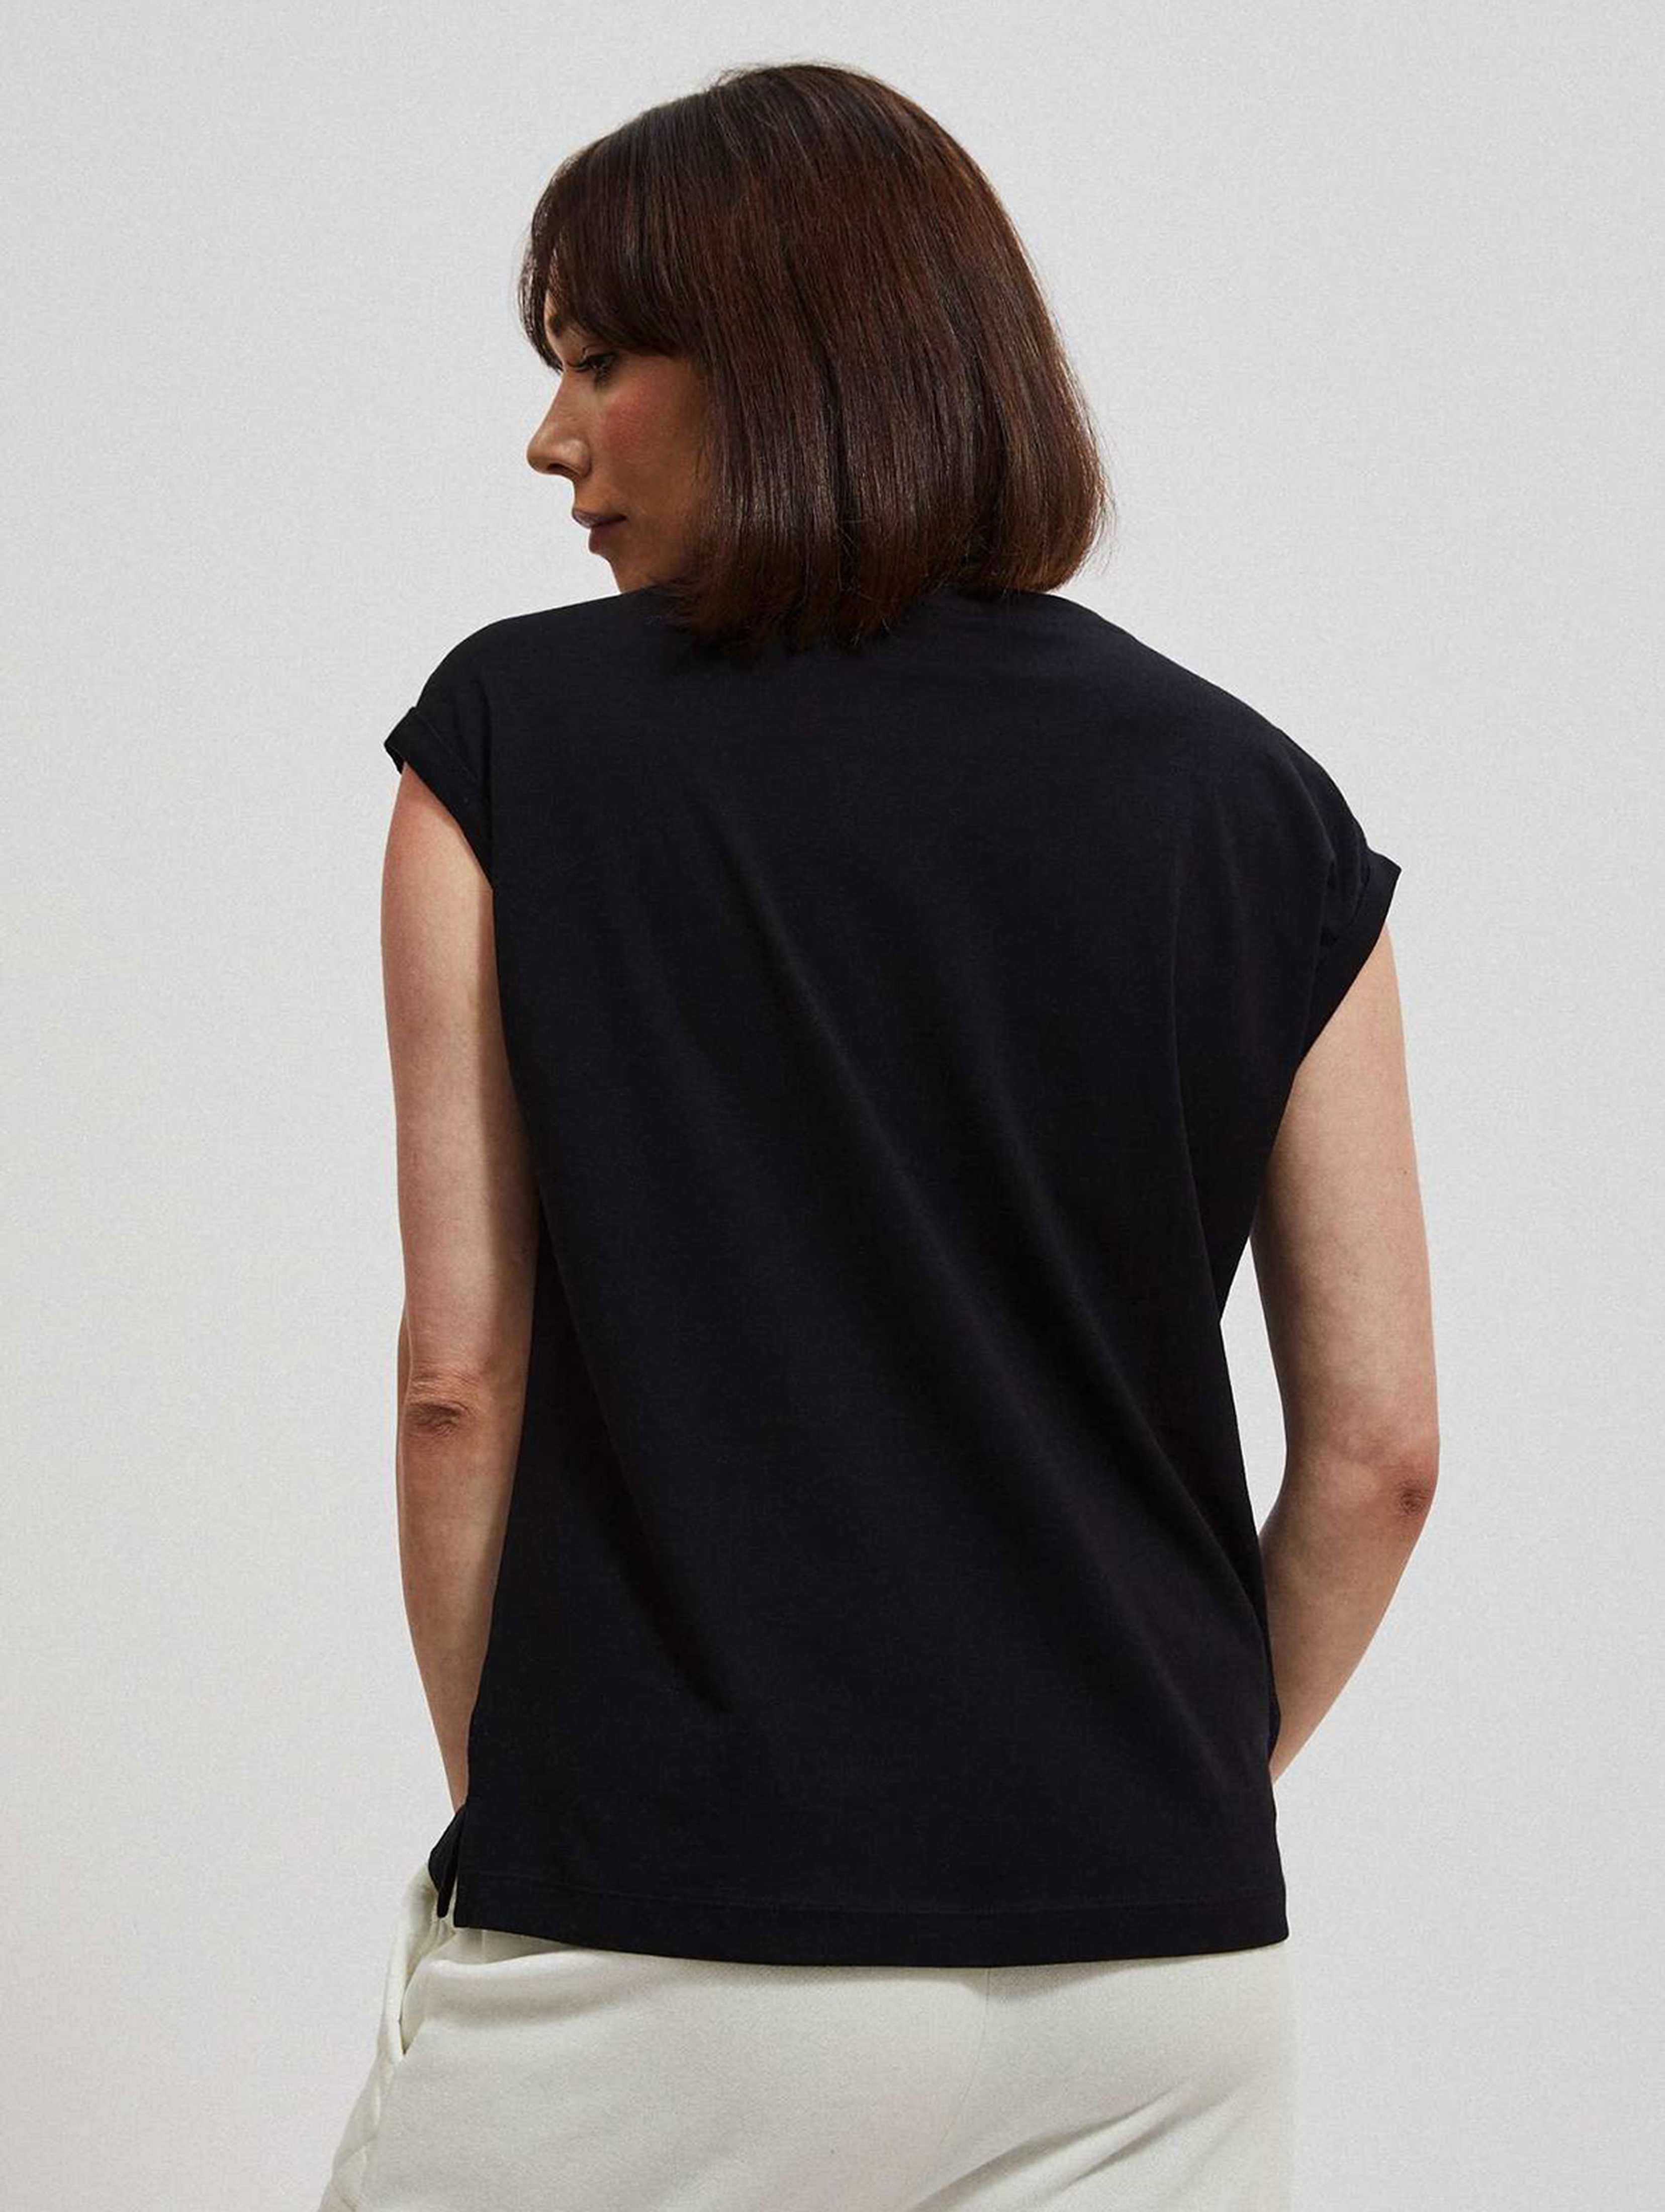 Czarna bawełniana bluzka damska z krótkim rękawem